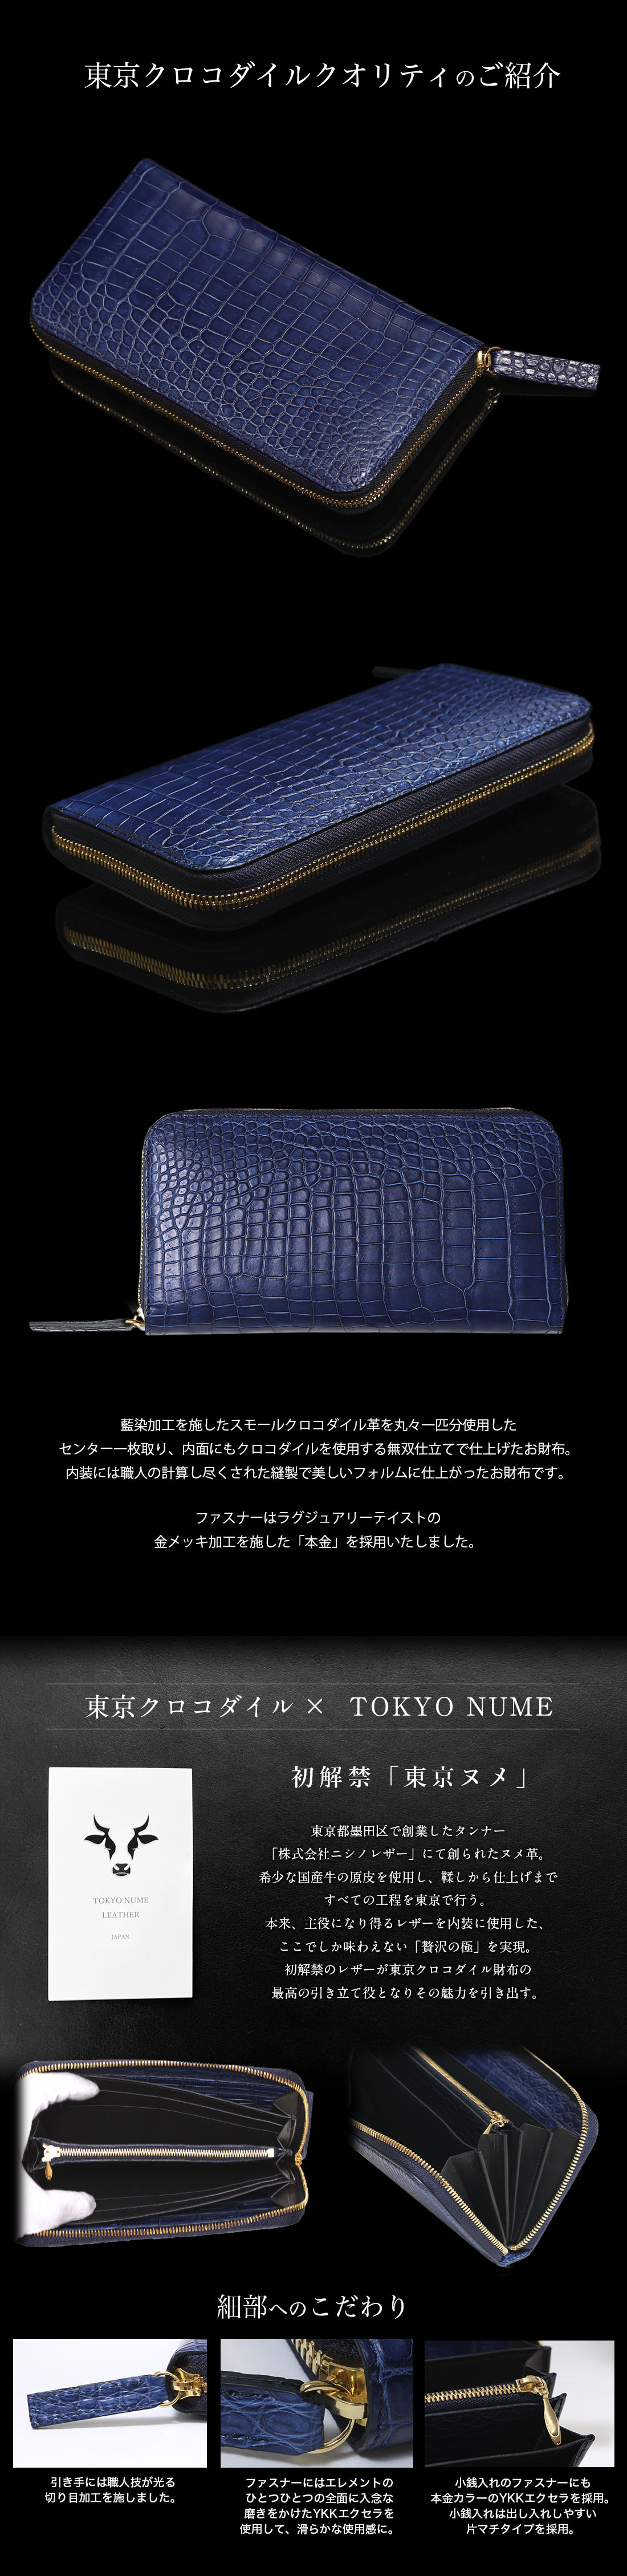 藍染 クロコダイル スモールクロコダイル ポロサス 長財布 財布 極 無双 ラウンドファスナー メンズ 日本製 ブランド プレゼント ブルー 高級